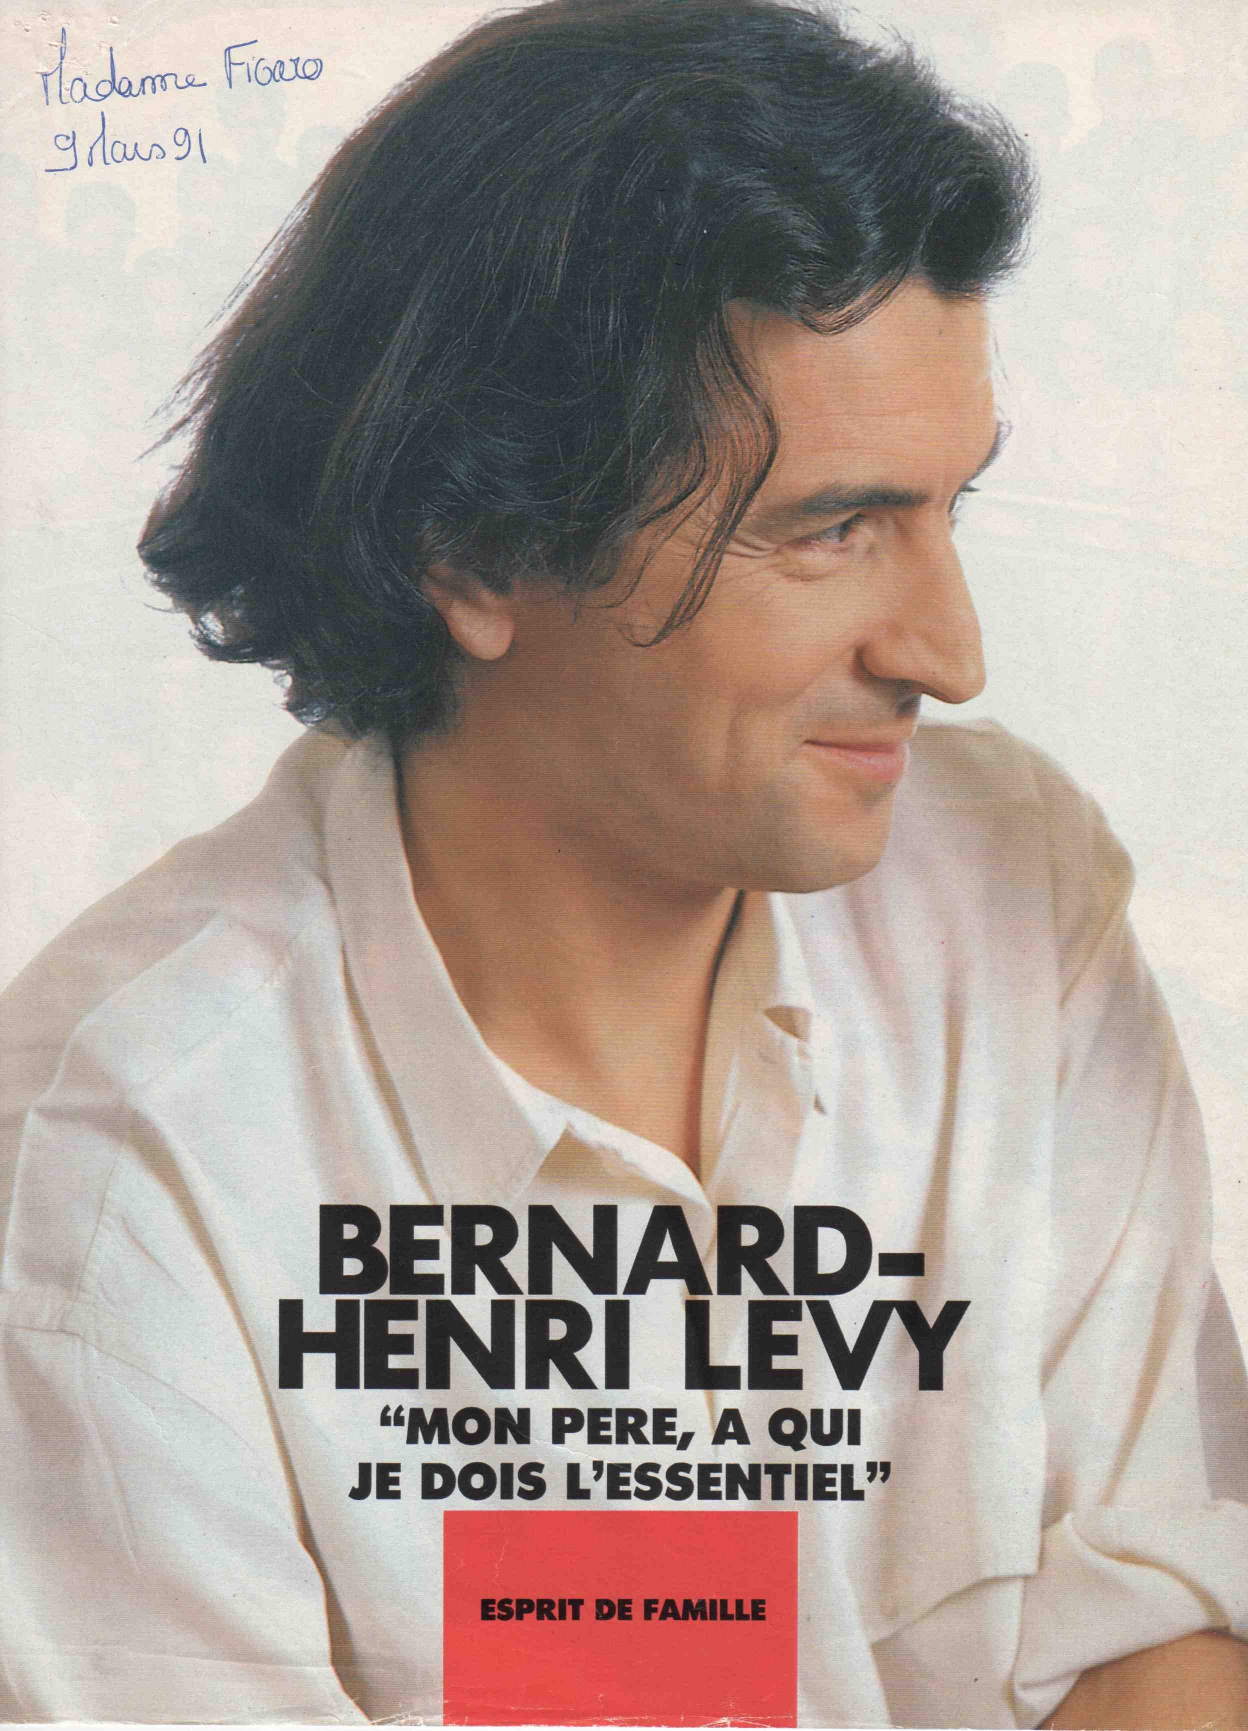 Entretient entre BHL et son père, André Lévy, dans "Madame Figaro", le 9 mars 1991.